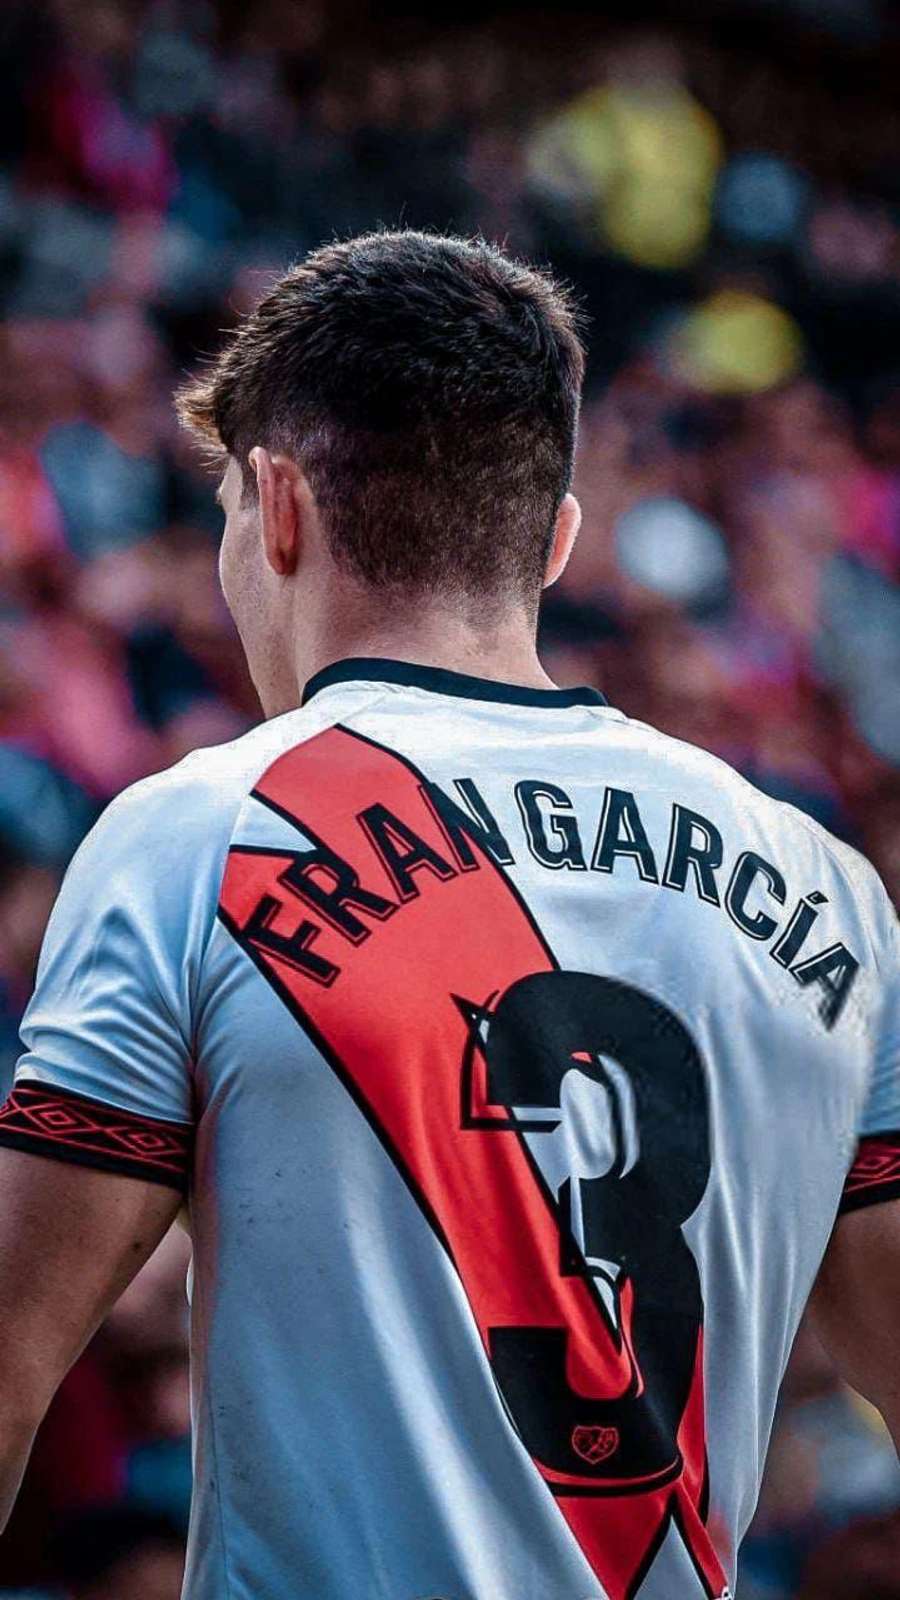 Fran García è uno dei migliori terzini sinistri spagnoli.